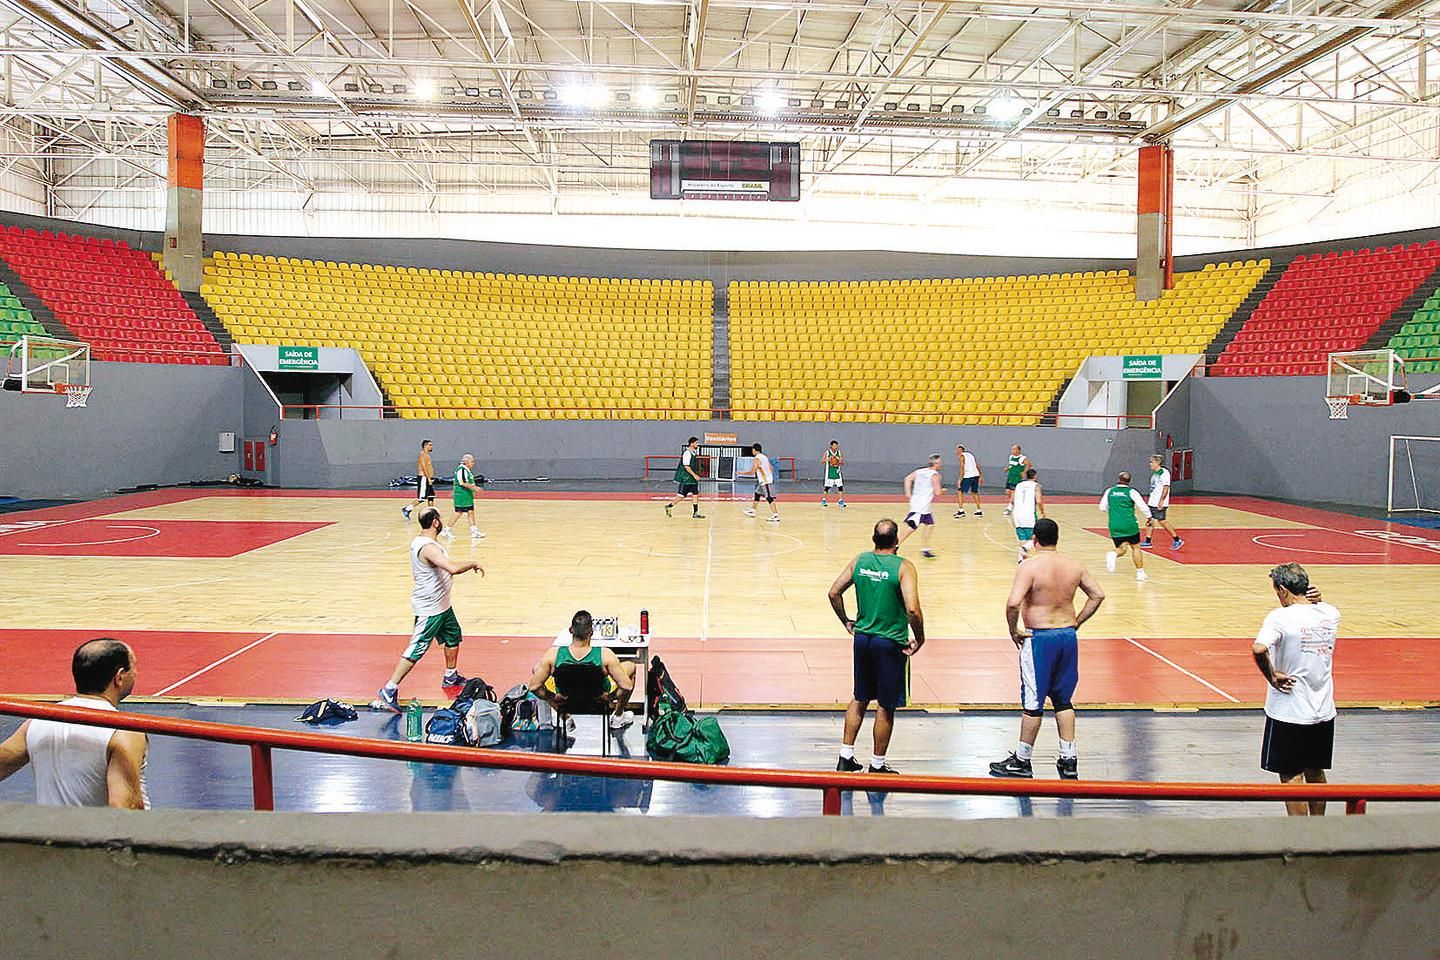 Brasil vence Porto Rico no basquete e enfrentará a Venezuela na